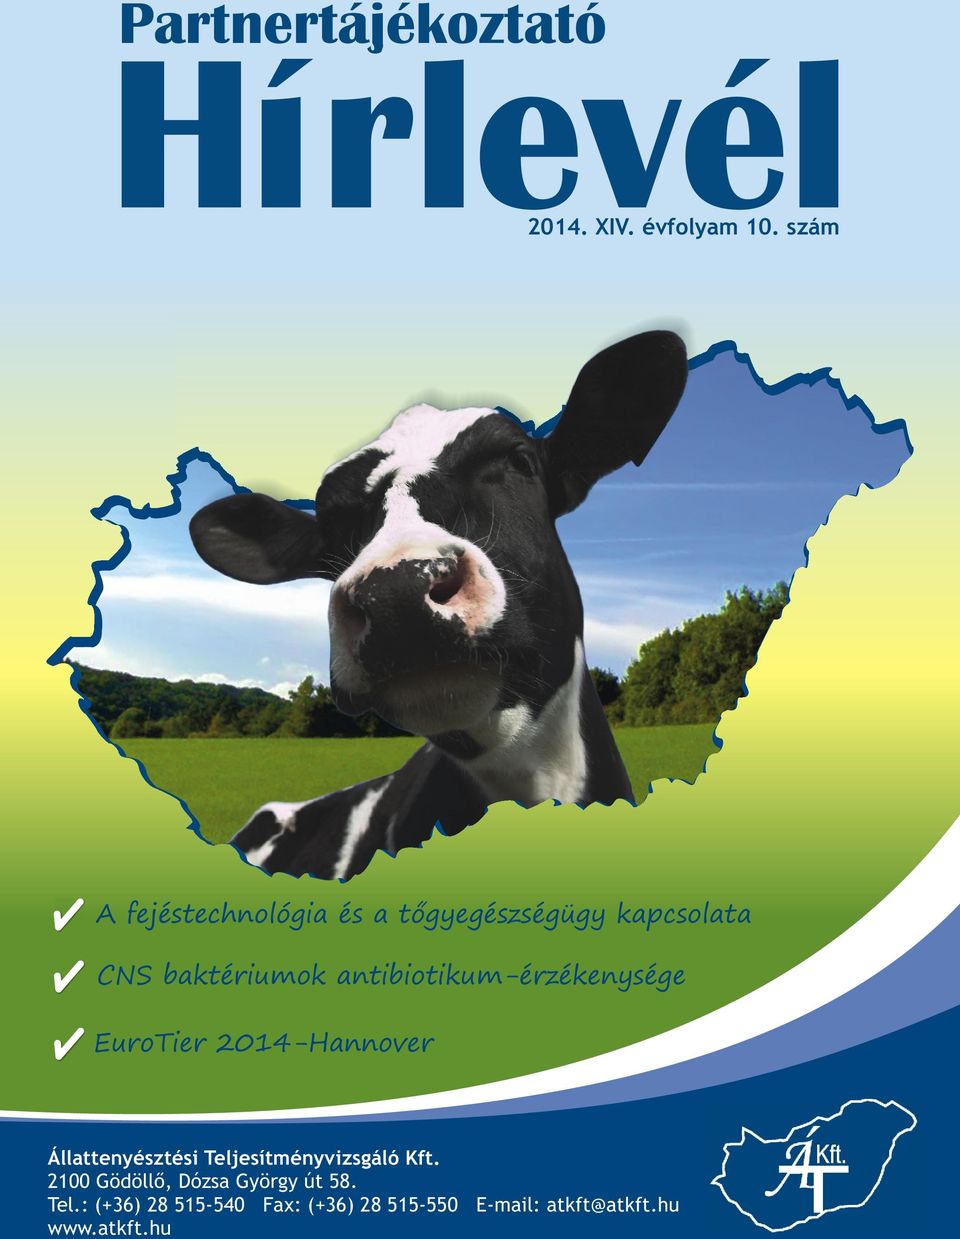 antibiotikum-érzékenysége EuroTier 2014-Hannover Állattenyésztési